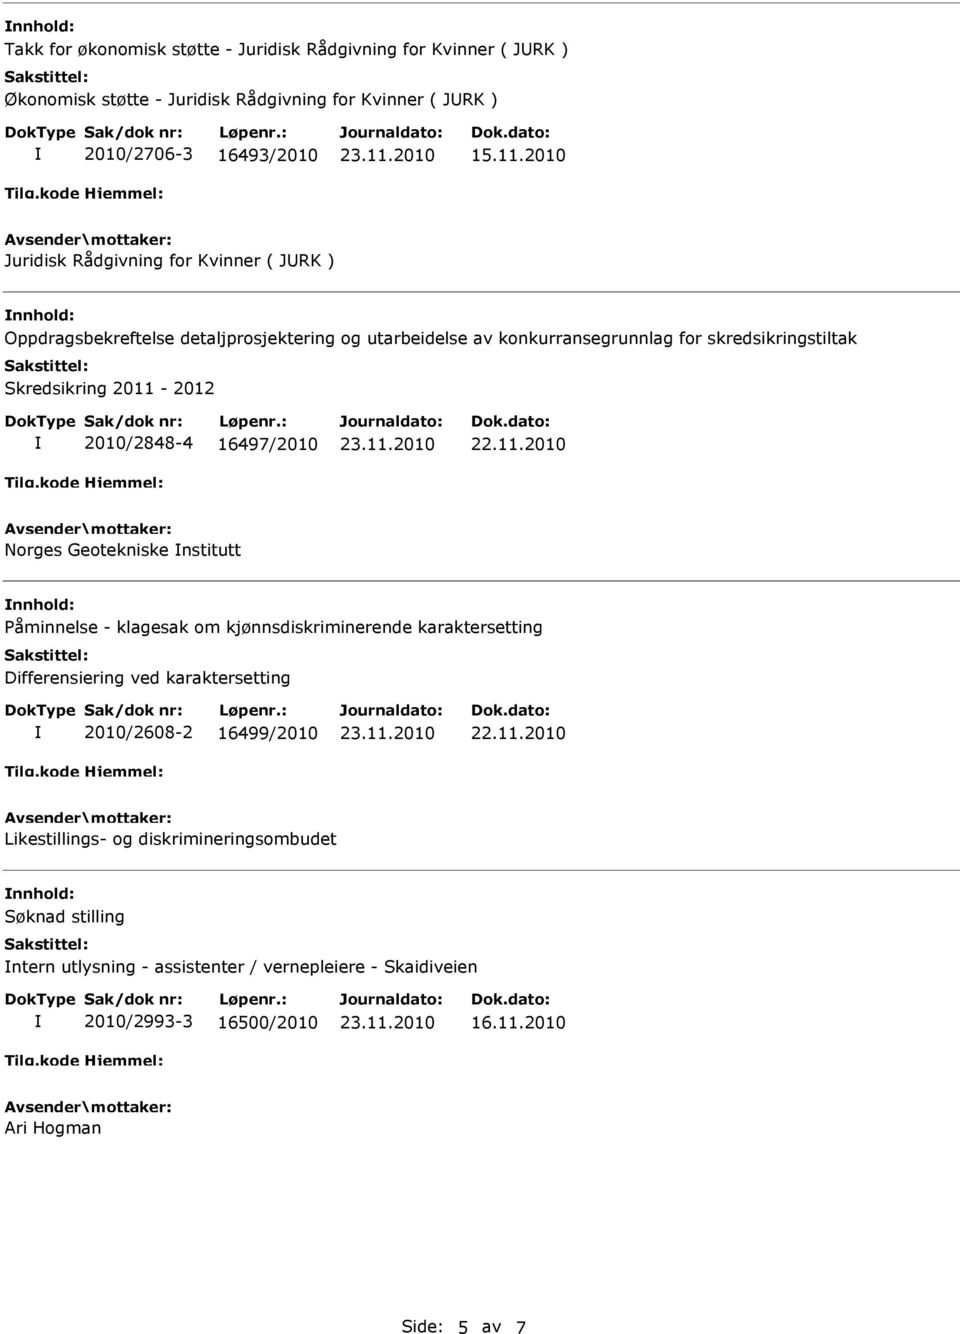 2011-2012 2010/2848-4 16497/2010 Norges Geotekniske nstitutt nnhold: Påminnelse - klagesak om kjønnsdiskriminerende karaktersetting Differensiering ved karaktersetting